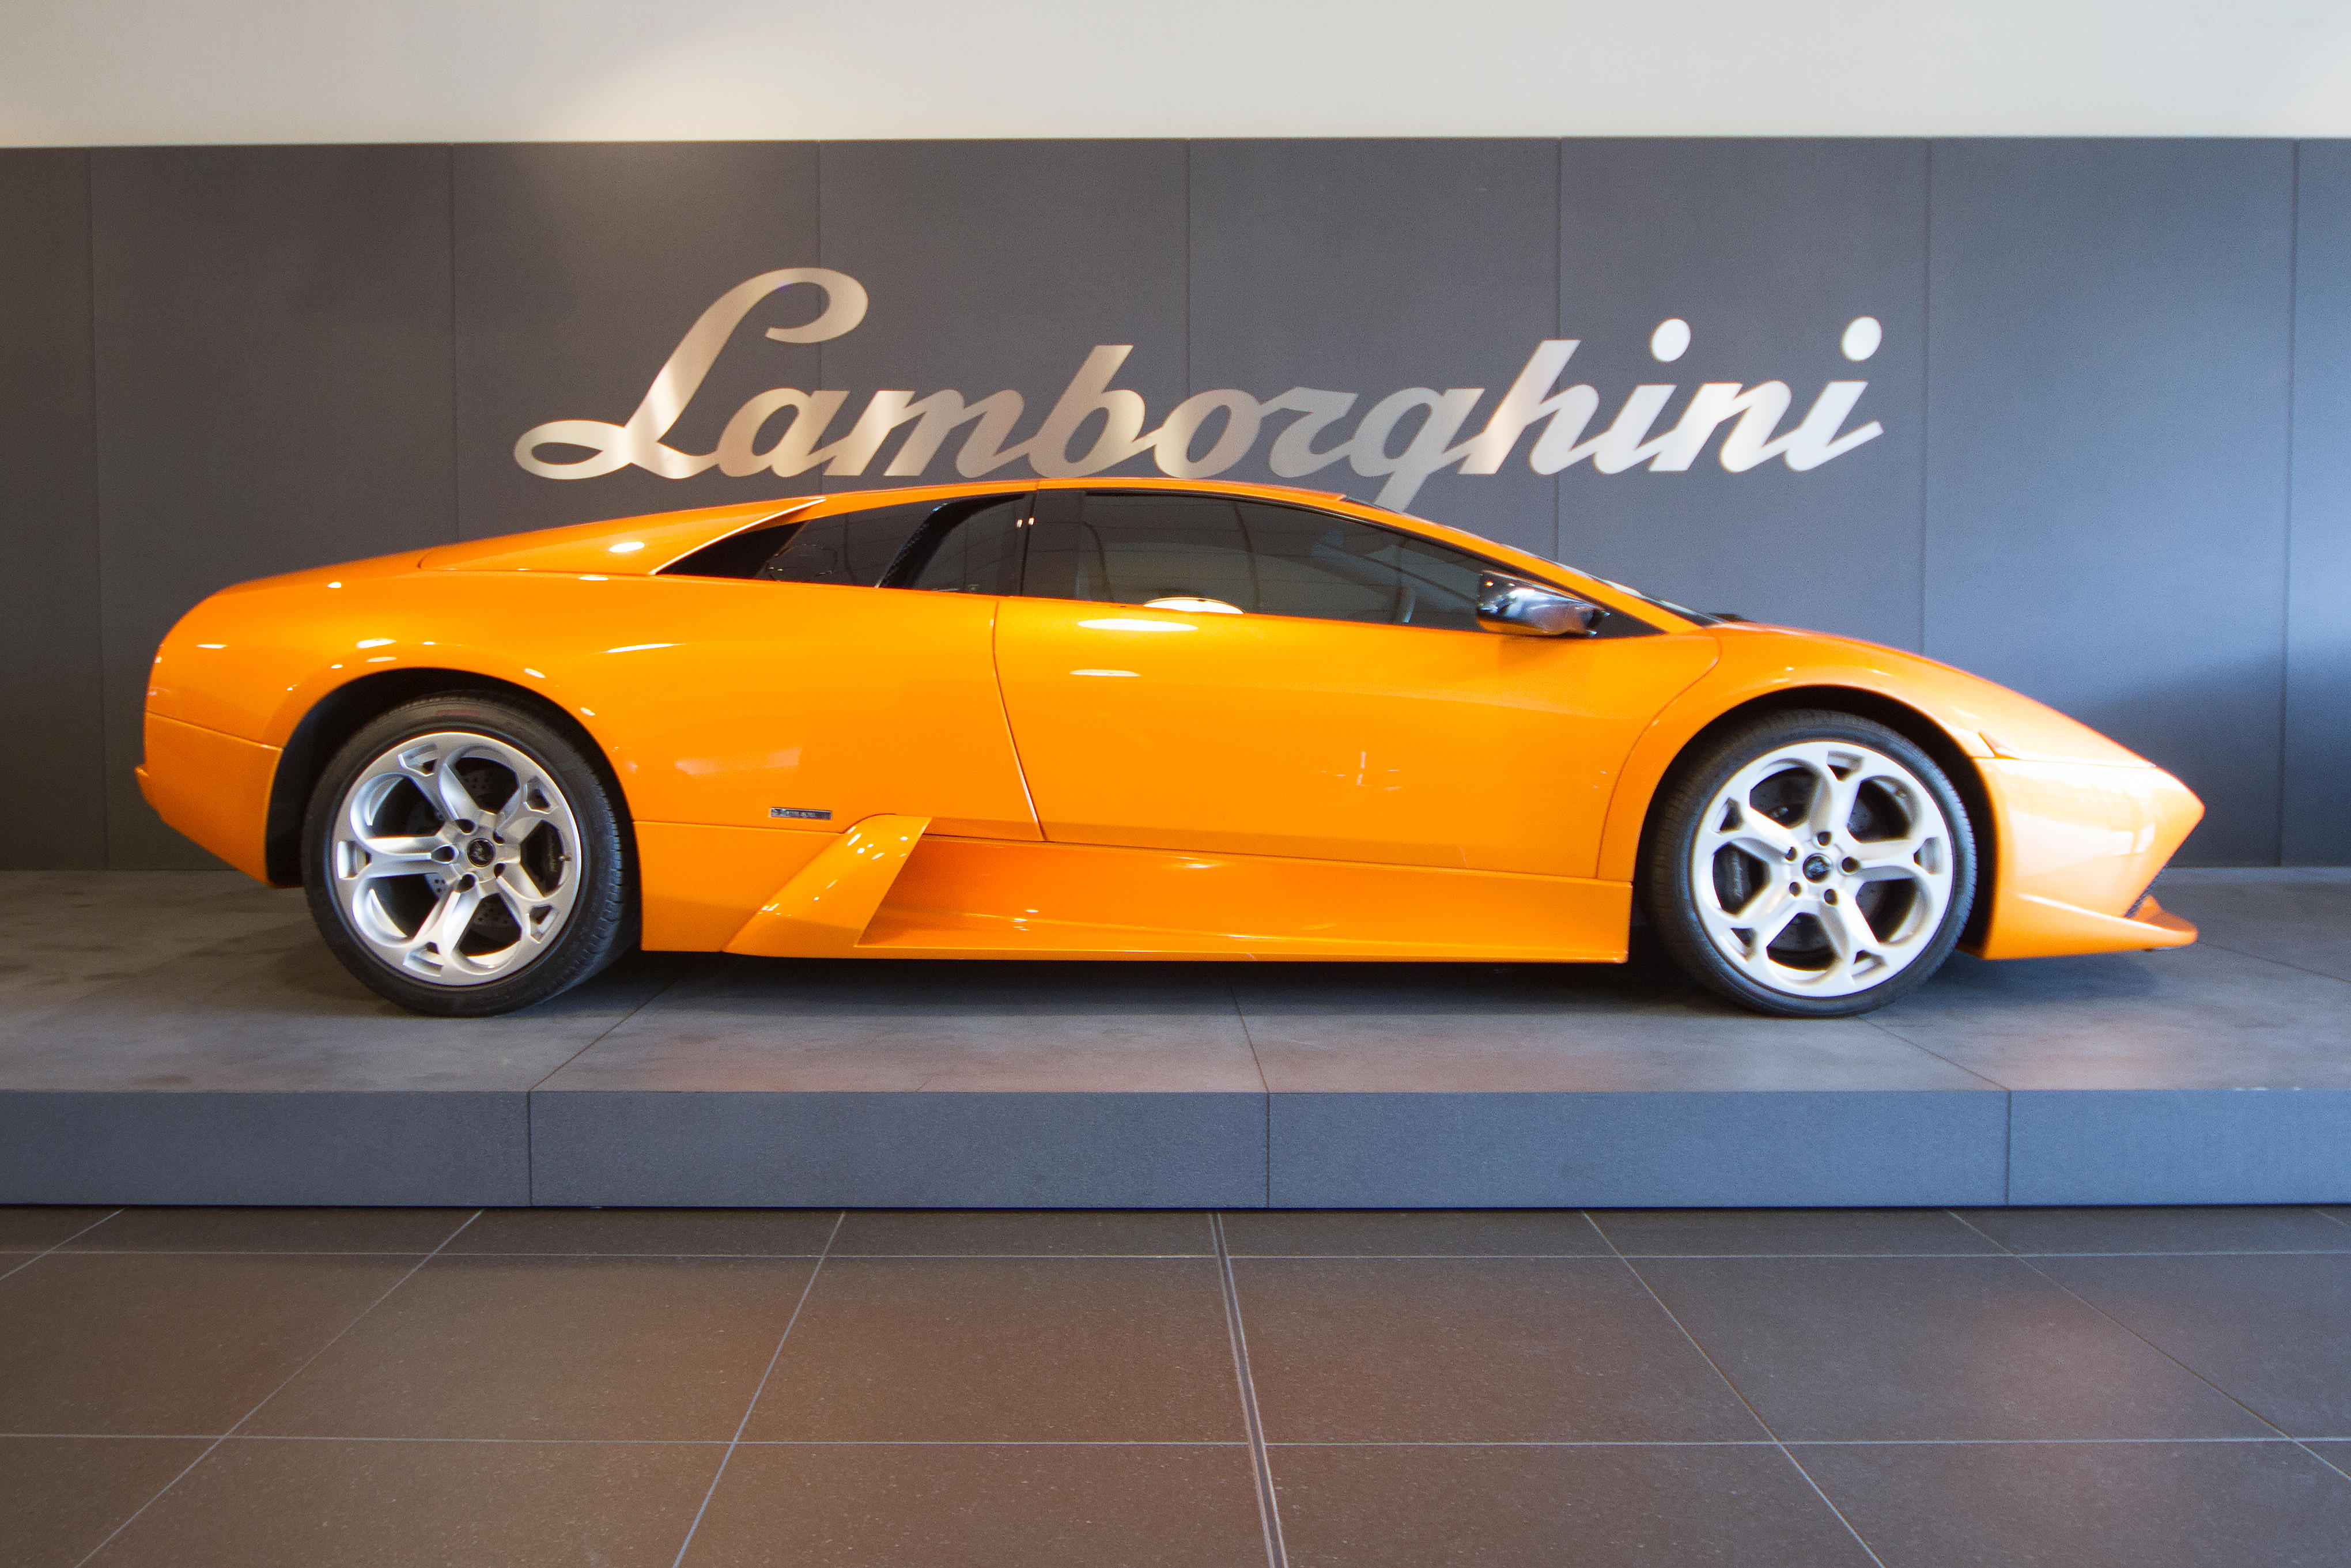 Lamborghini Birmingham Birmingham 01213 064007